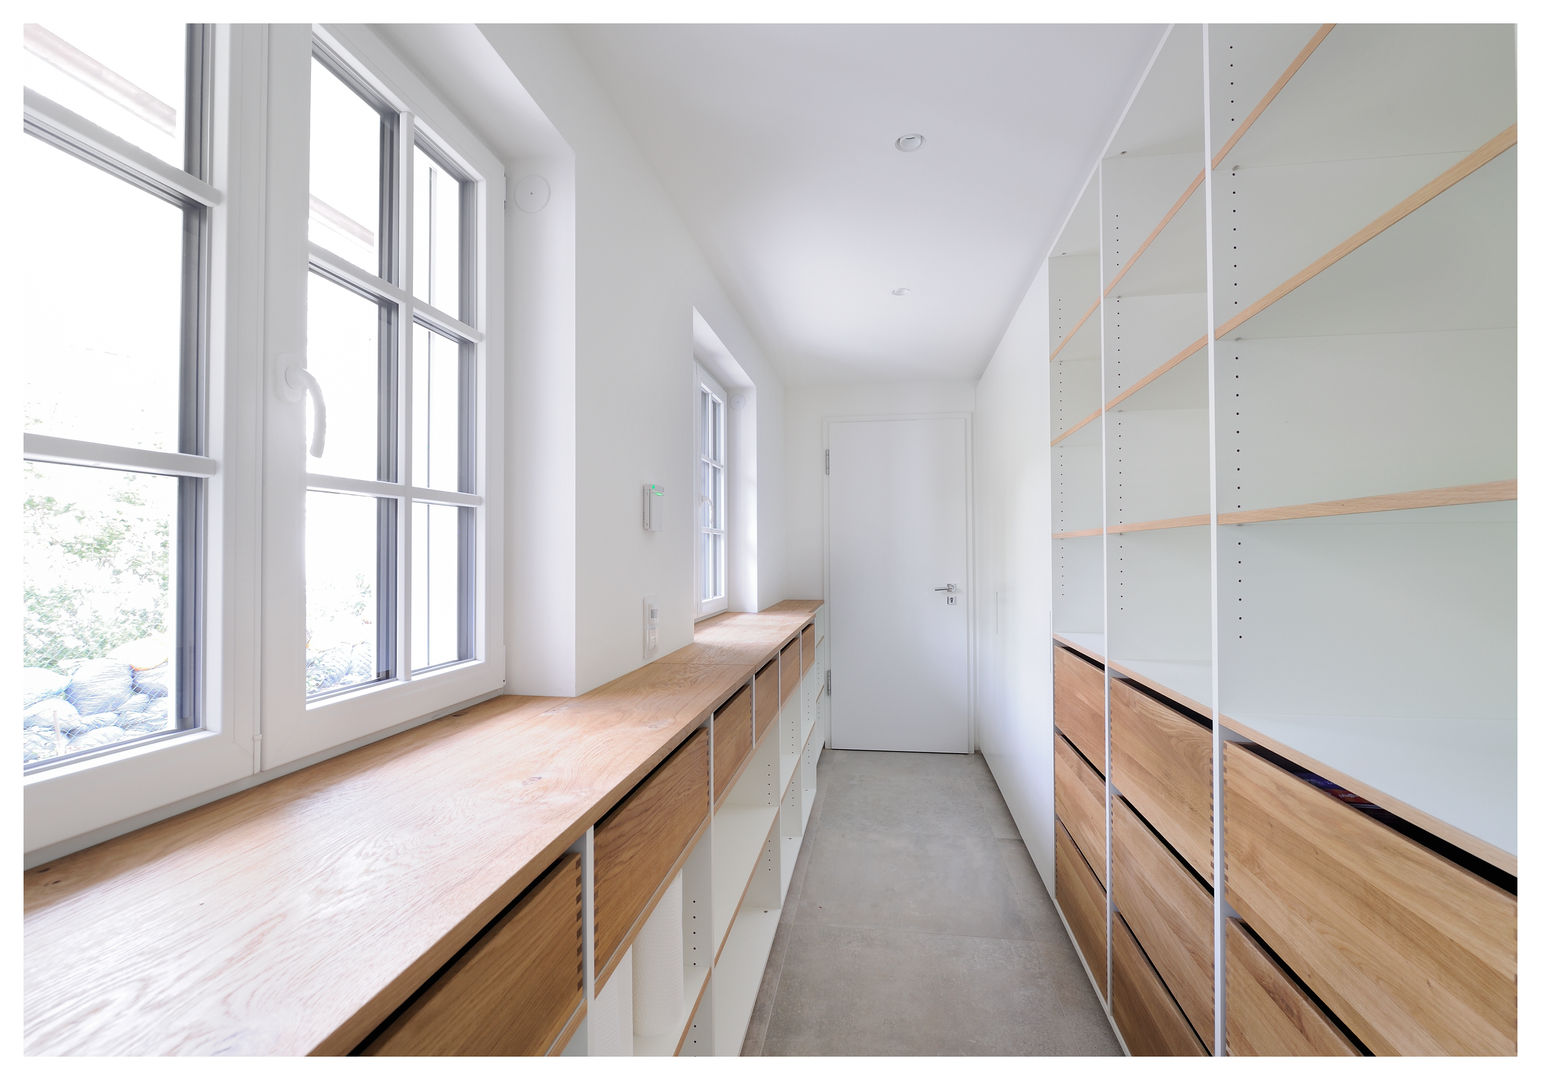 Familienvilla München, Heerwagen Design Consulting Heerwagen Design Consulting Closets de estilo moderno